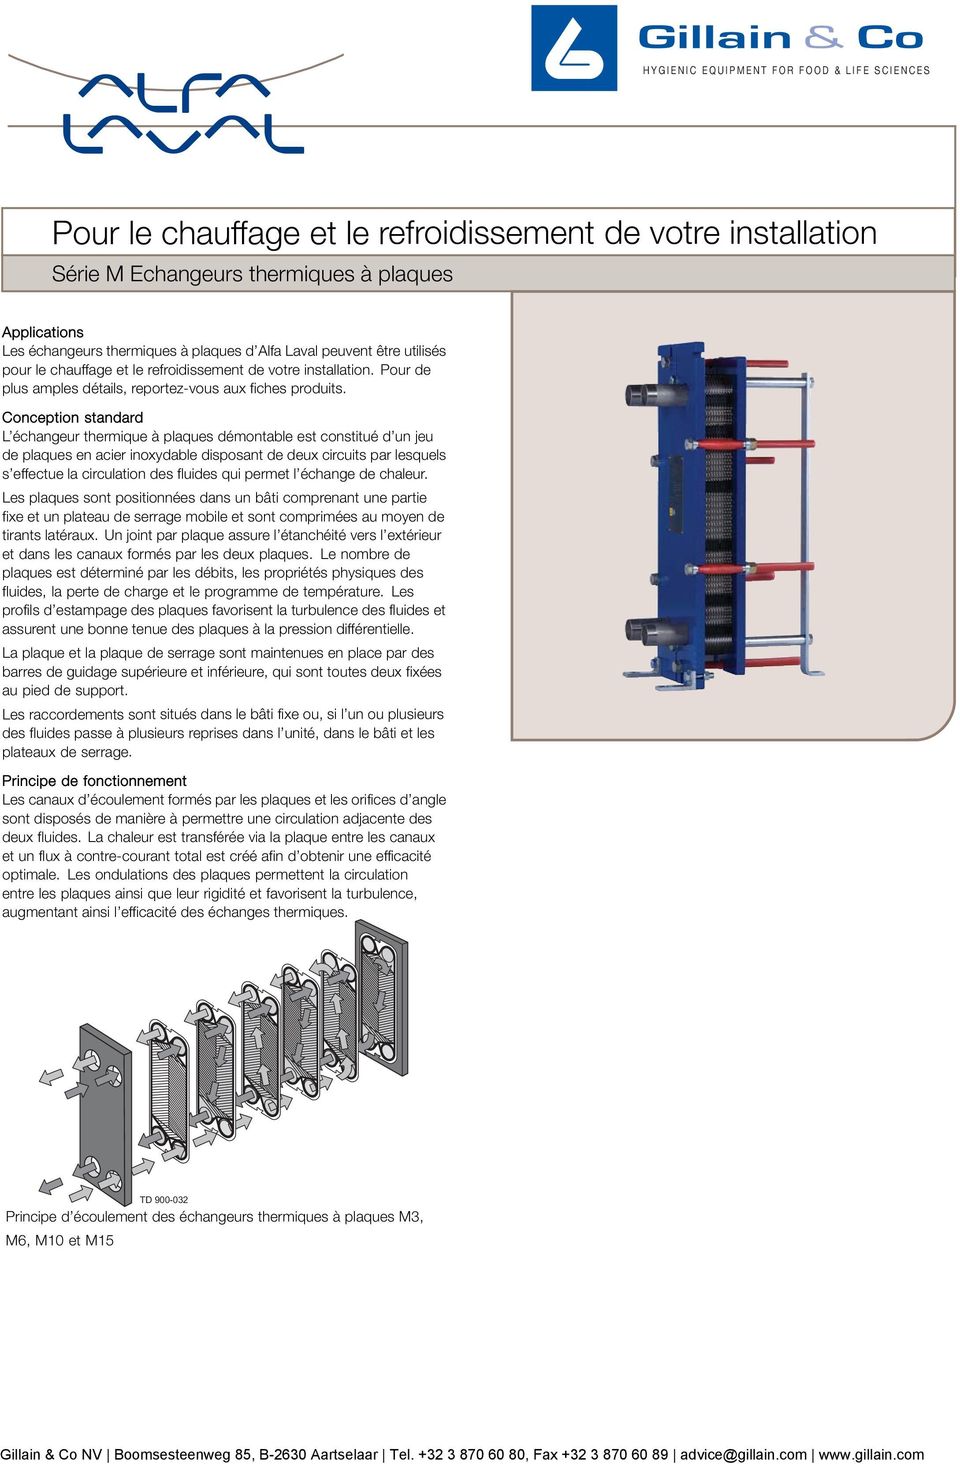 Conception standard L échangeur thermique à plaques démontable est constitué d un jeu de plaques en acier inoxydable disposant de deux circuits par lesquels s effectue la circulation des fluides qui